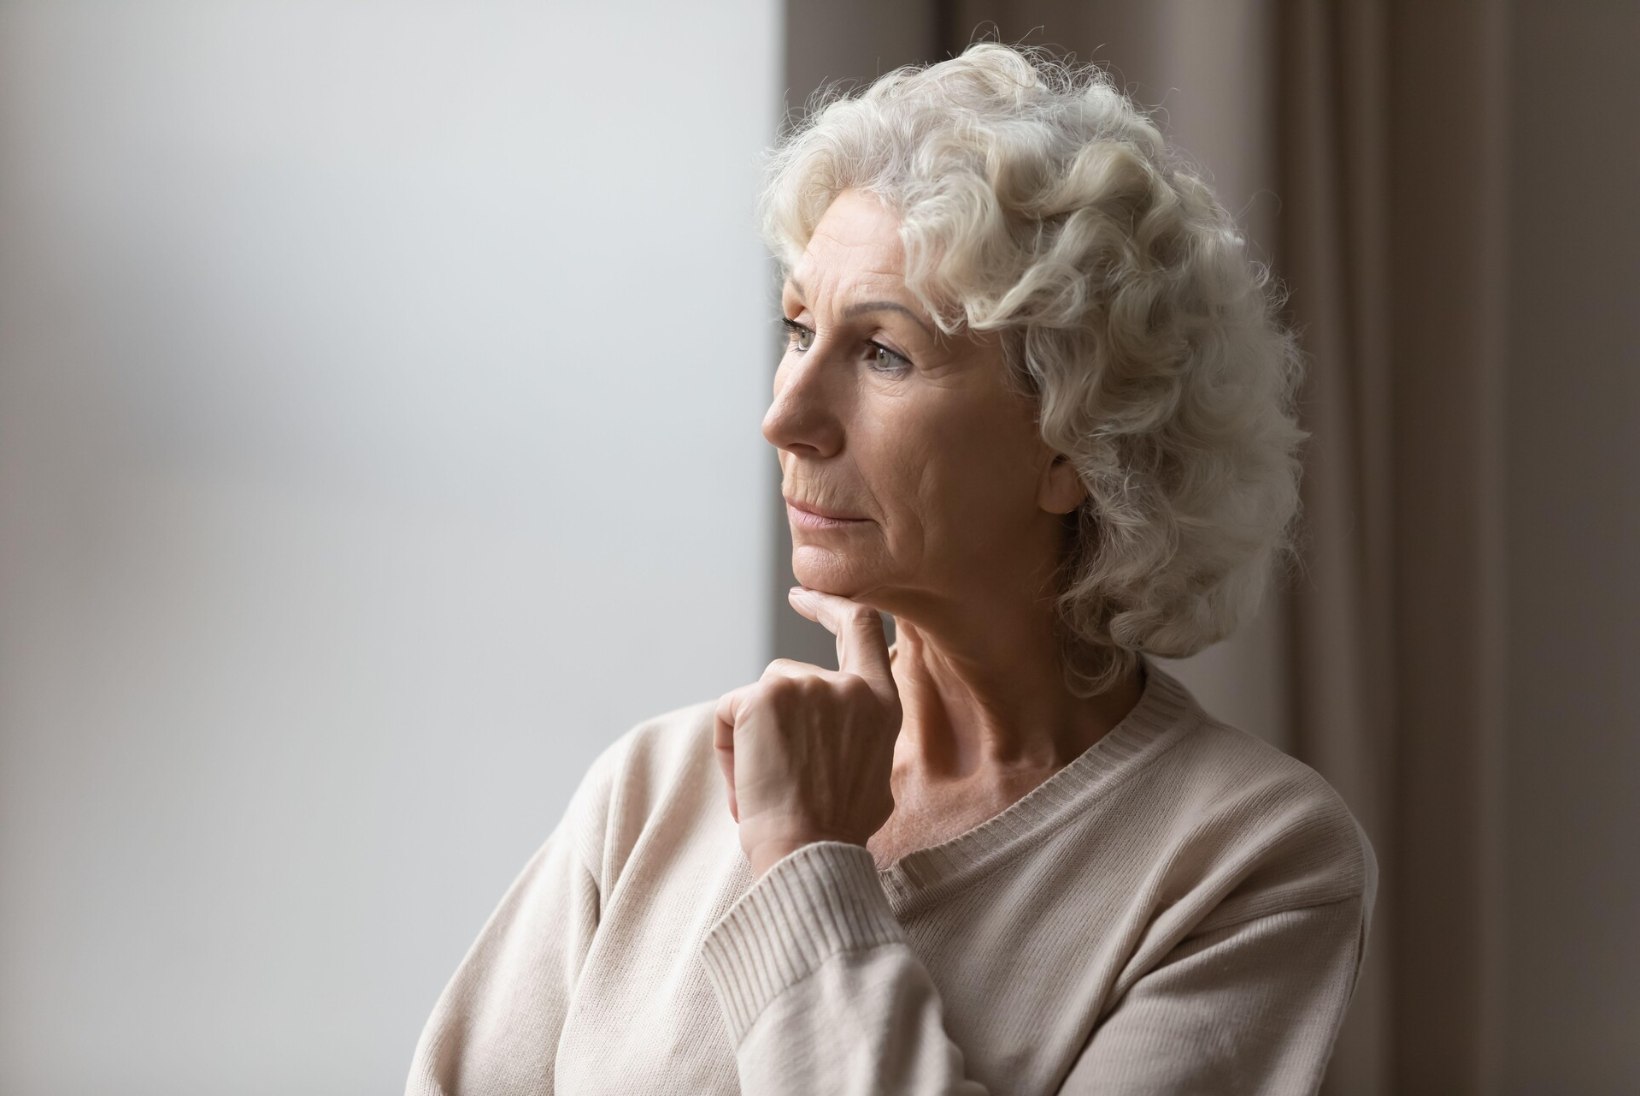 LIIGA VANA! Üle 70aastased naised tahaksid käia vähi sõeluuringutel, aga neid ei kutsuta